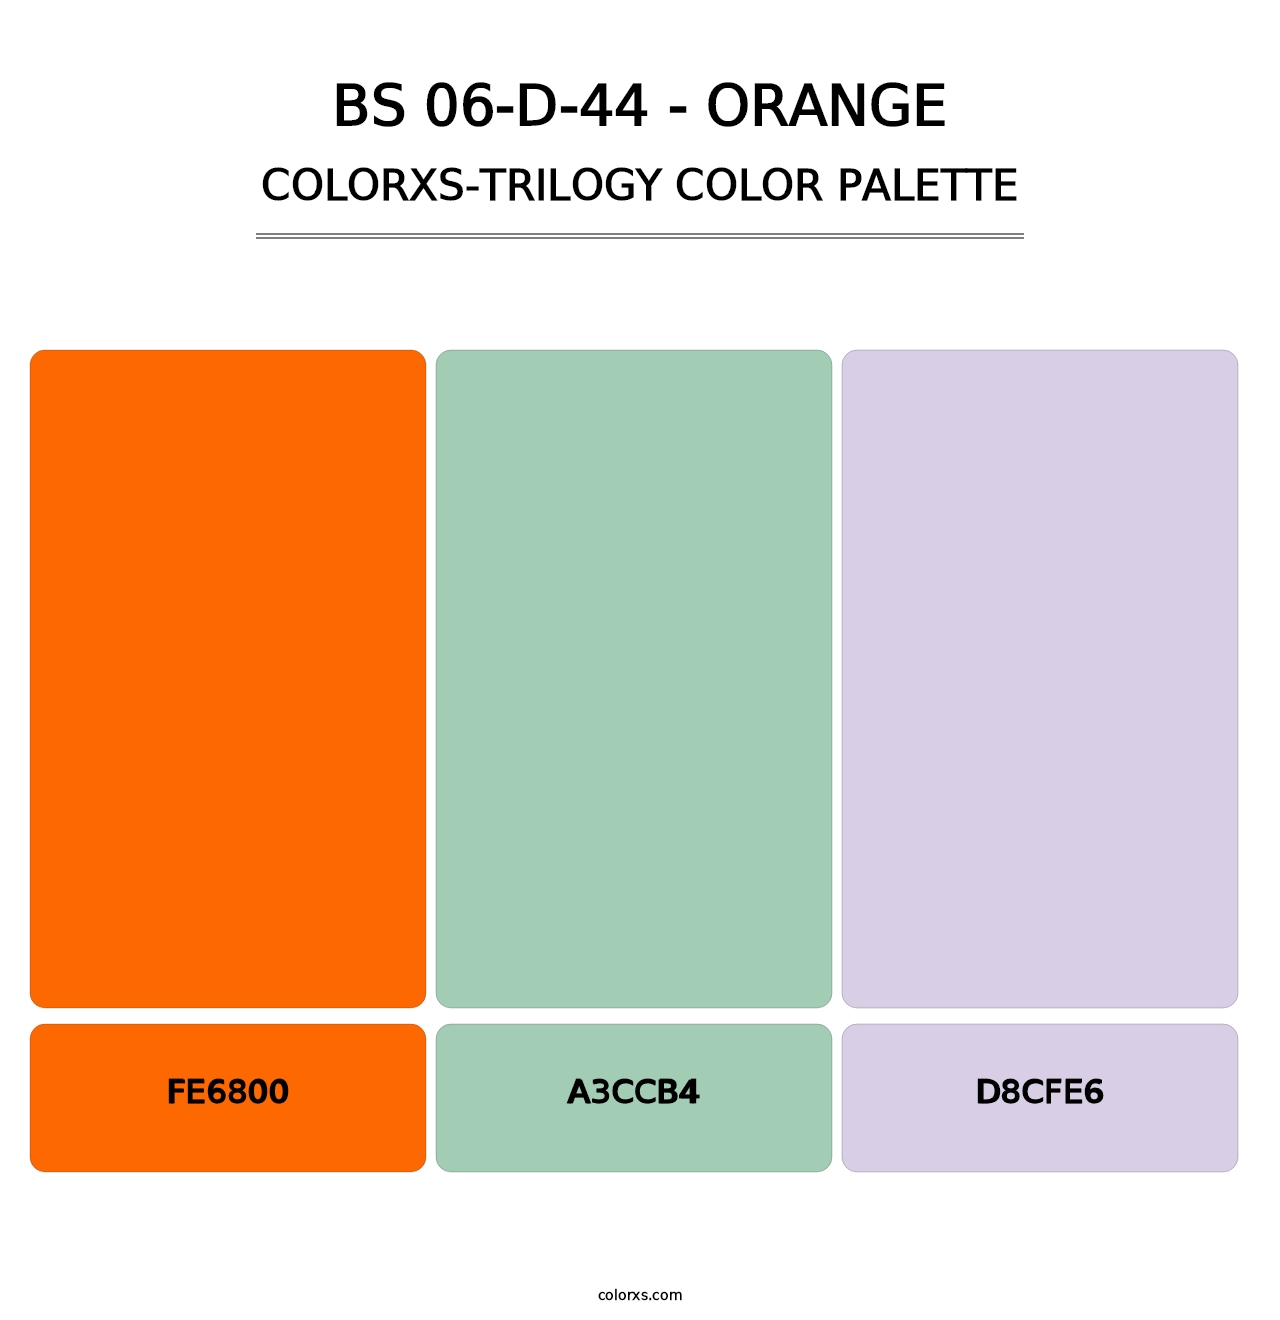 BS 06-D-44 - Orange - Colorxs Trilogy Palette